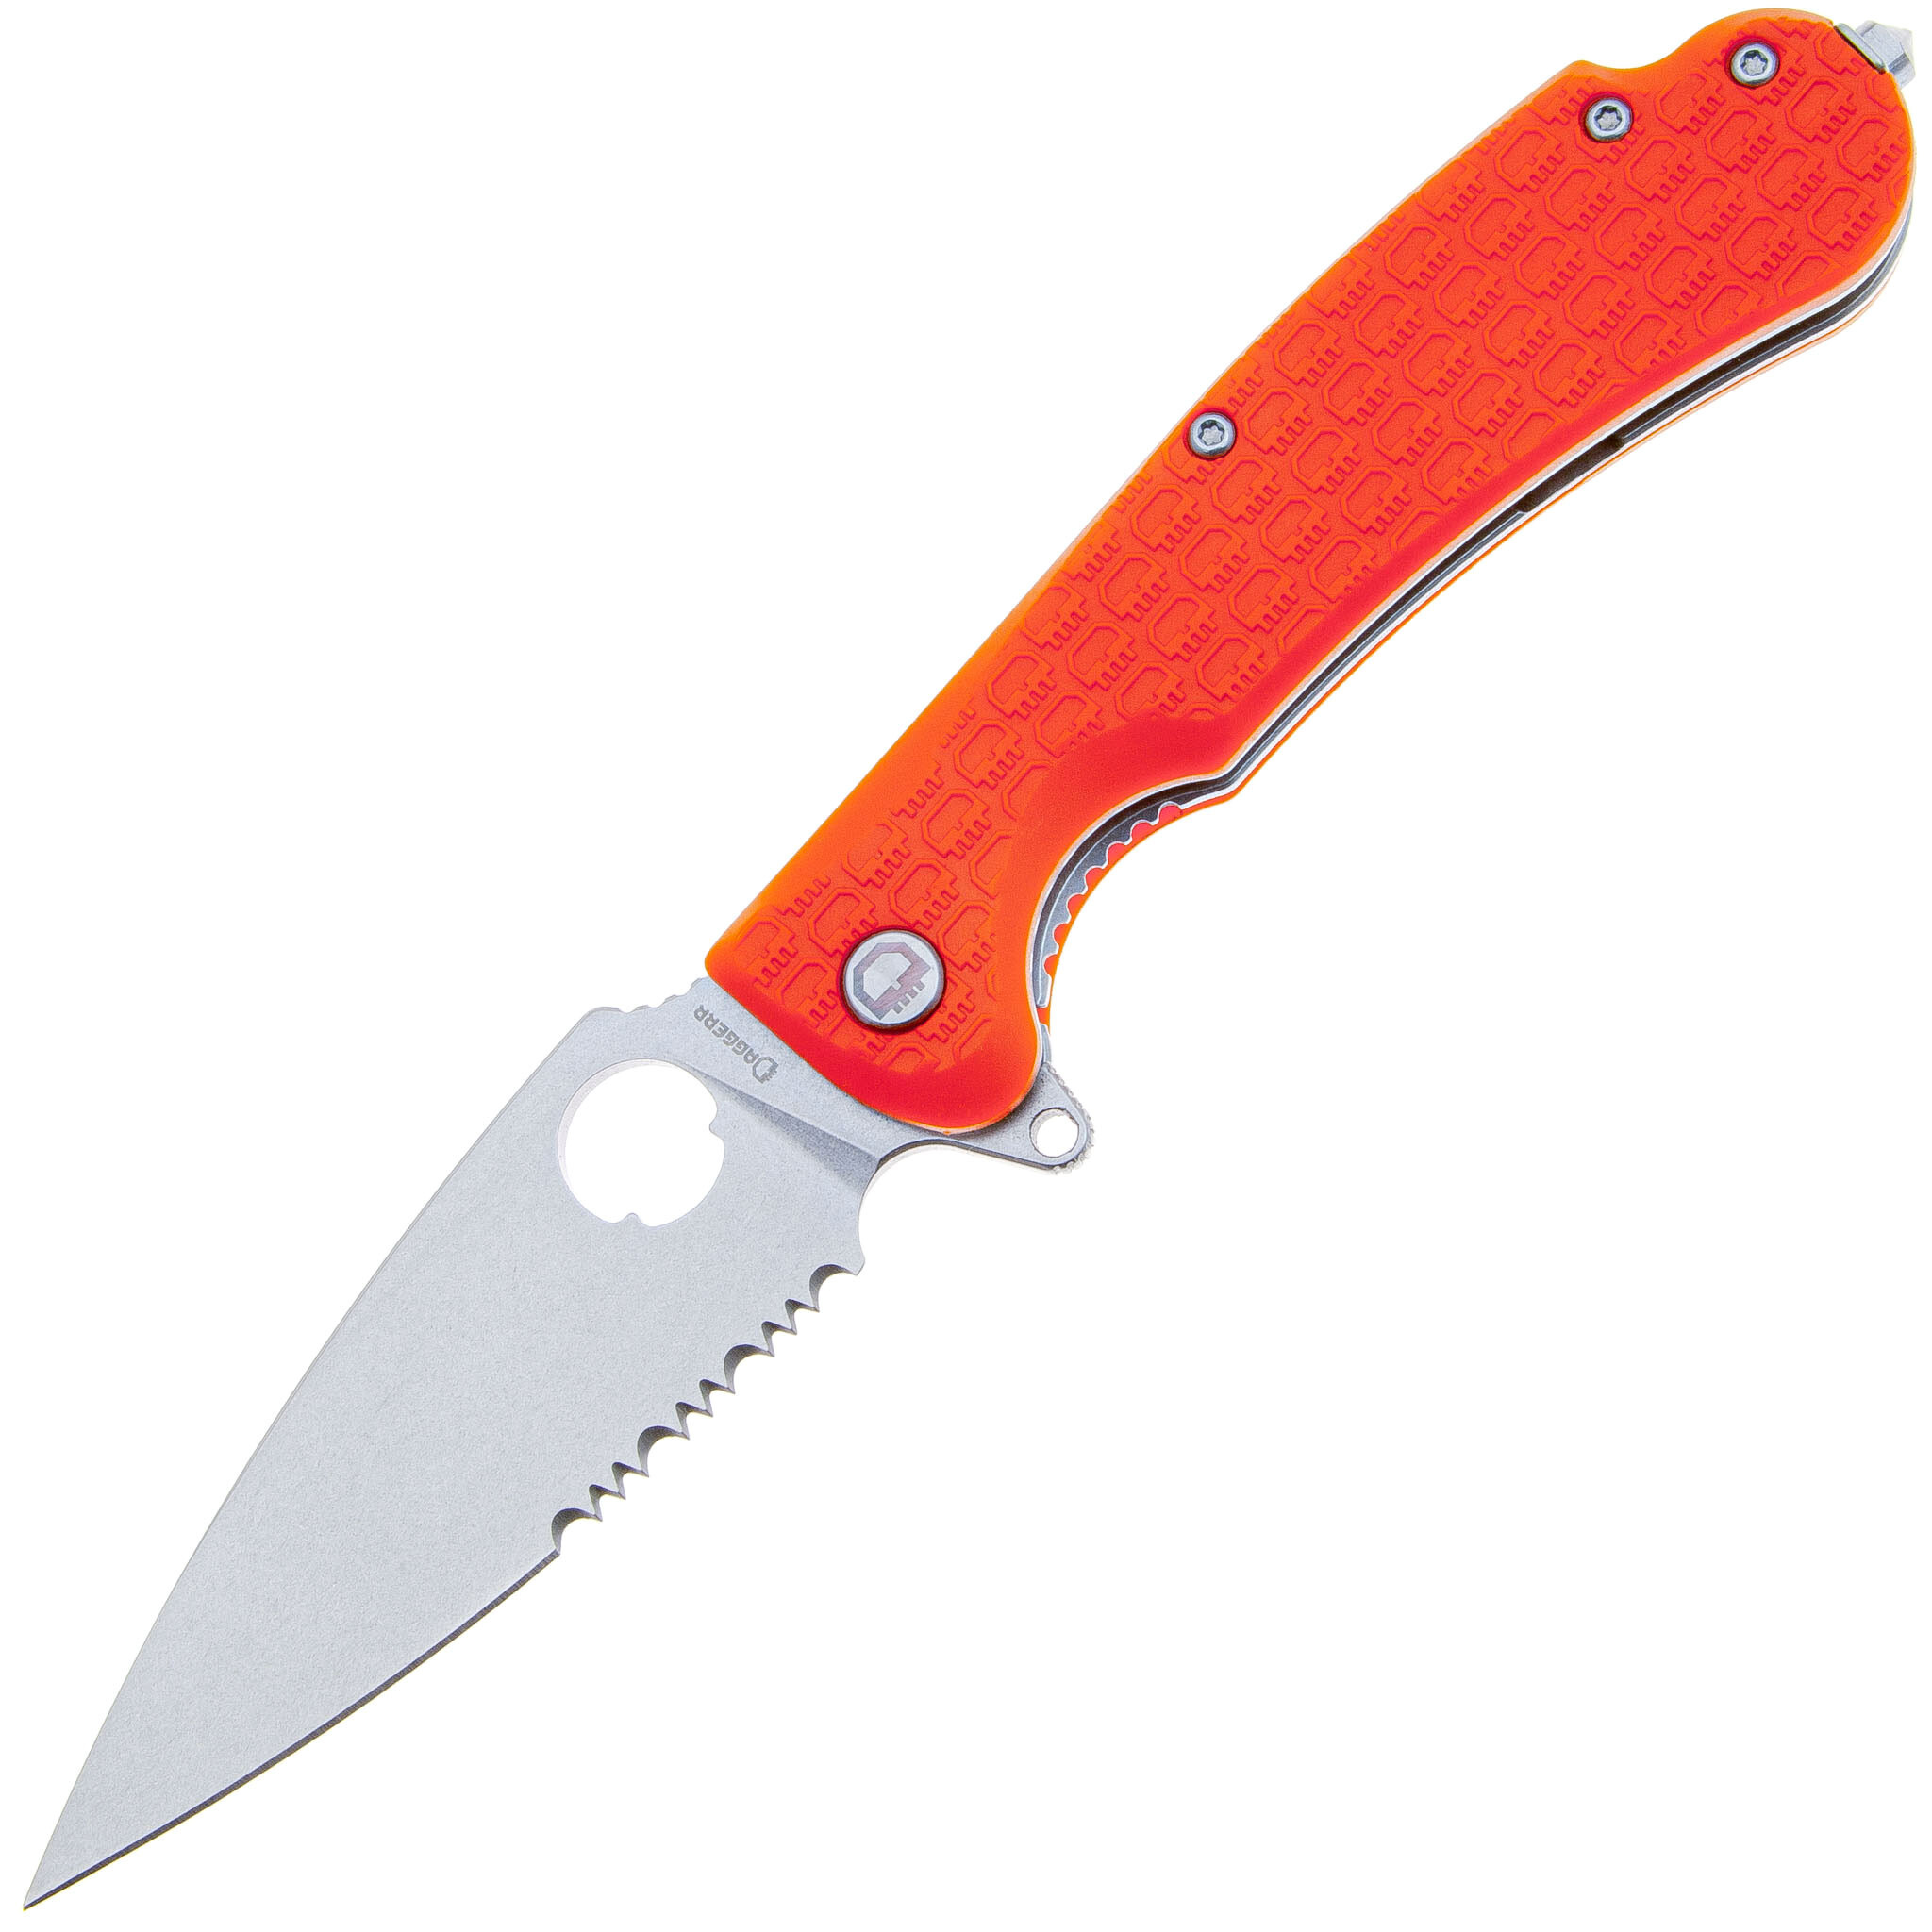 Складной нож Daggerr Resident Orange SW Serrated , сталь 8Cr14MoV, рукоять FRN - фото 1